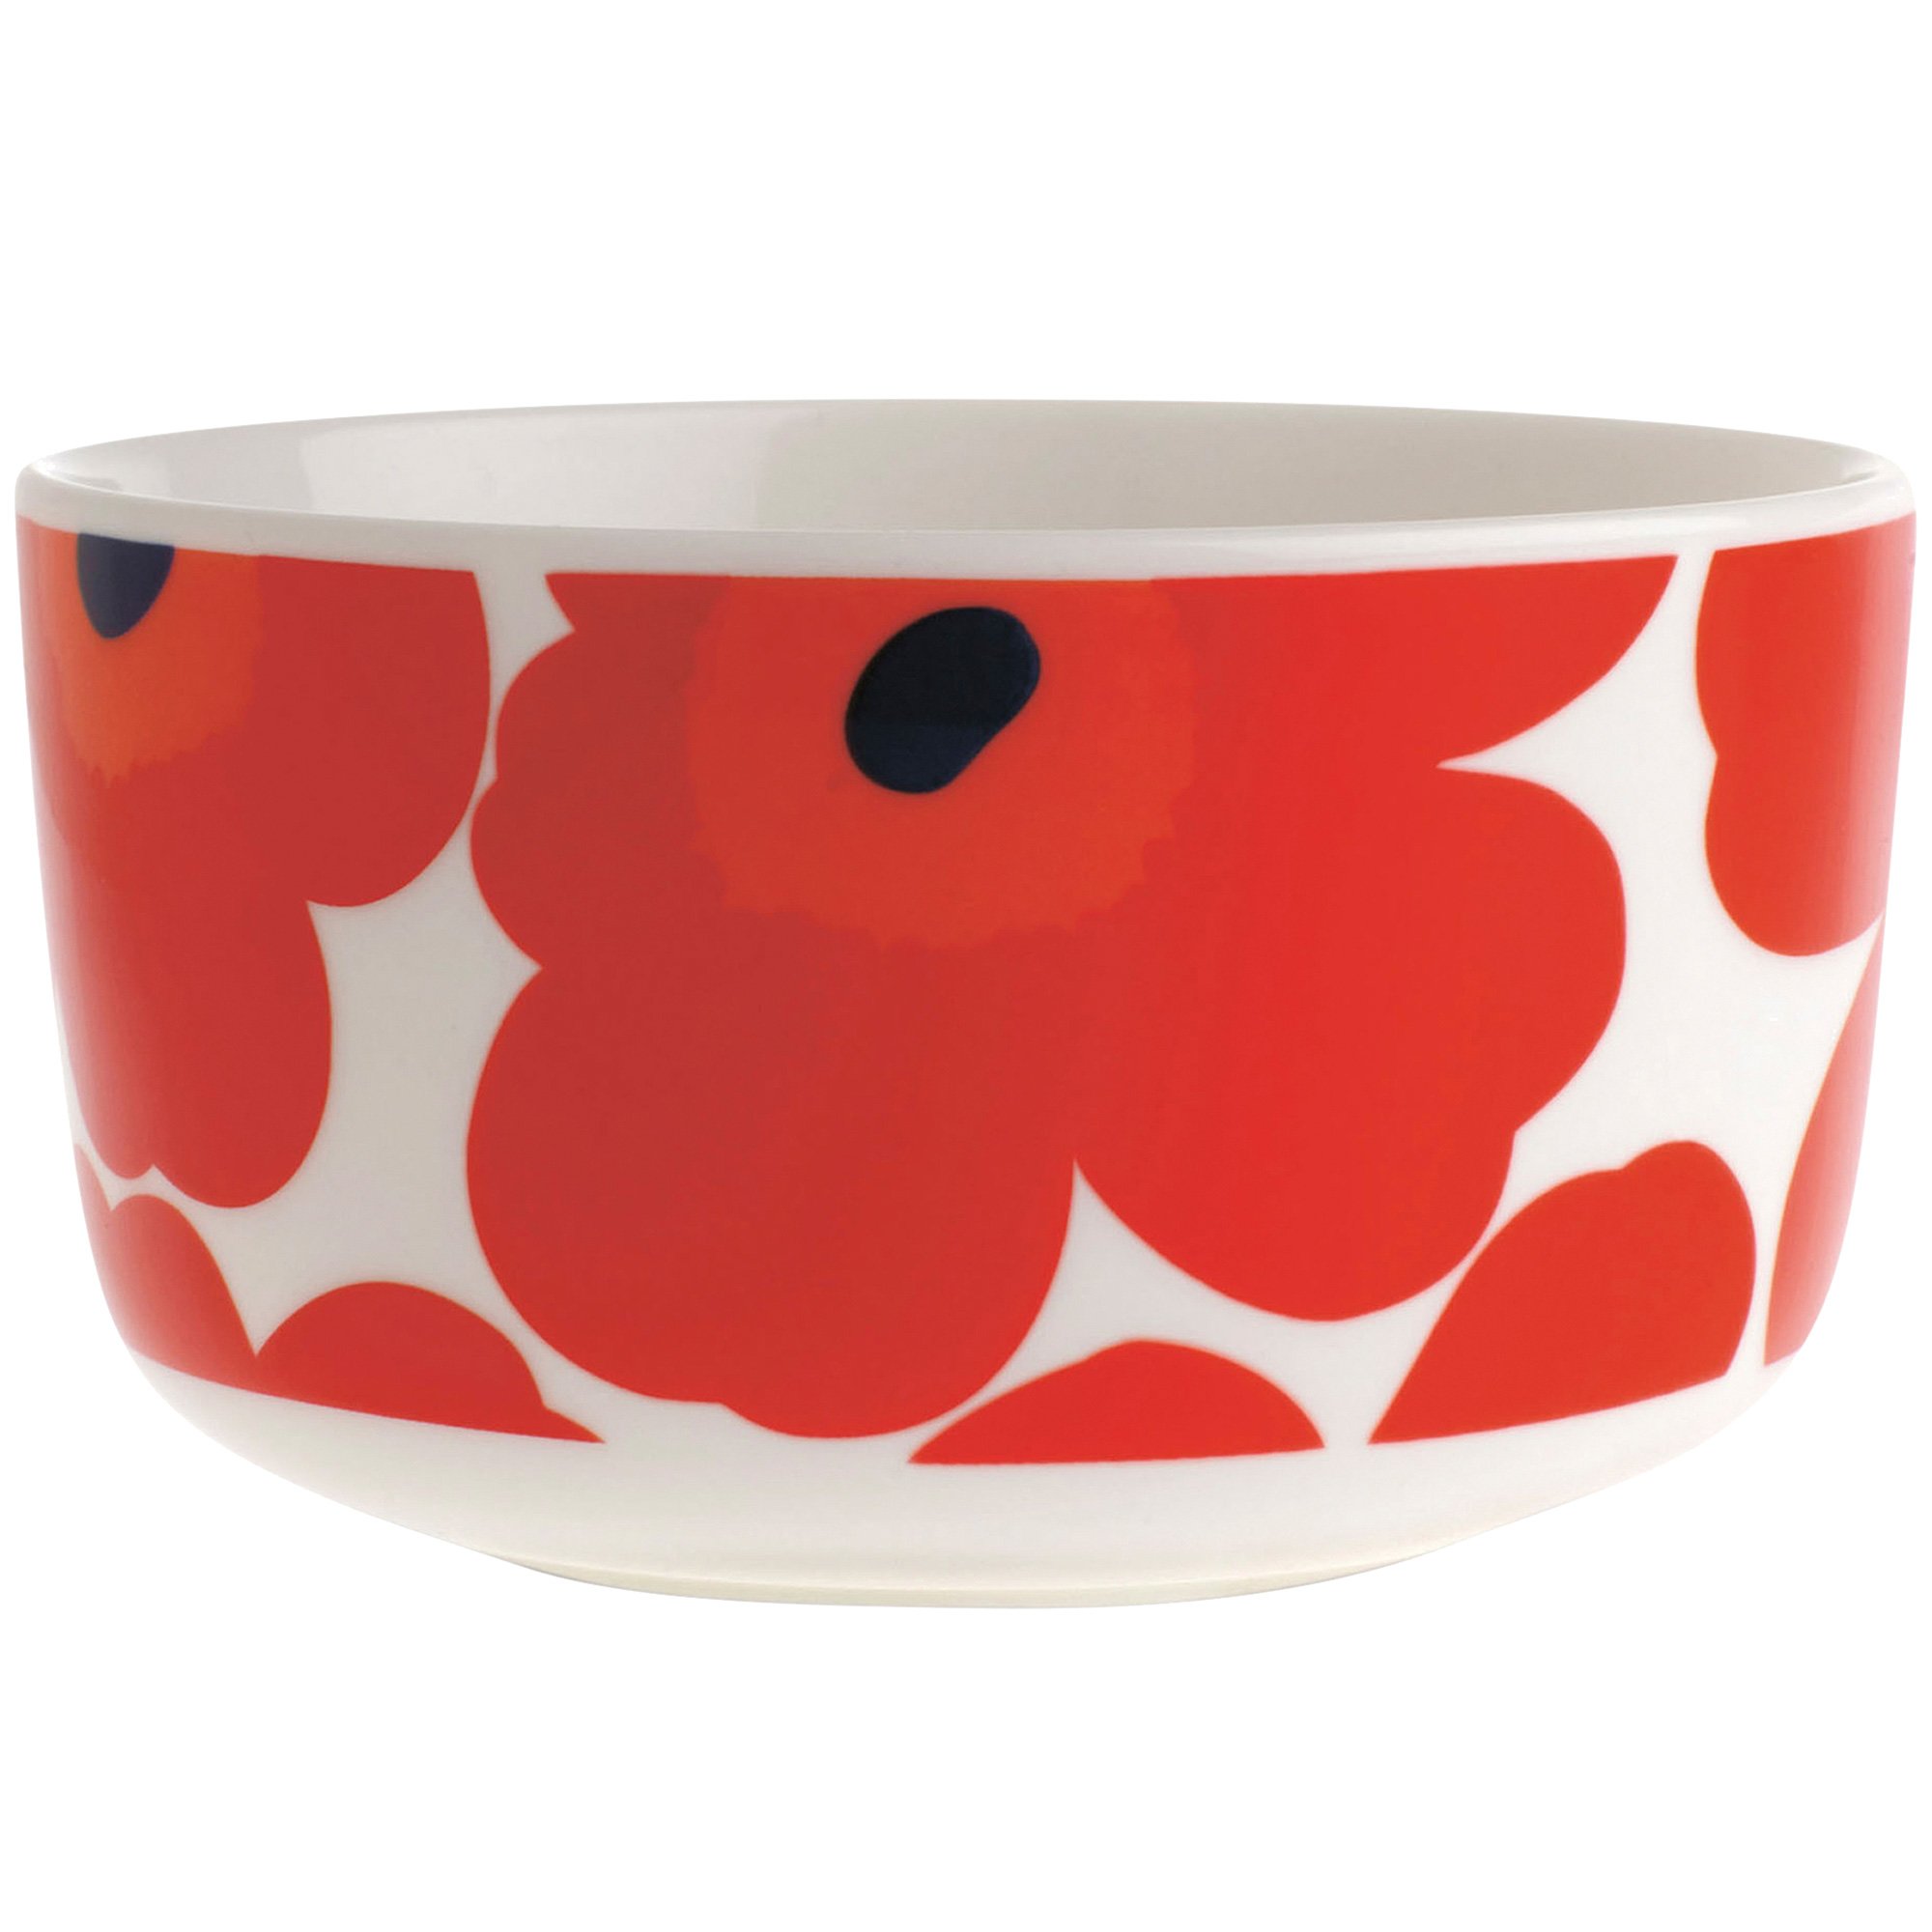 8: Marimekko Unikko skål, 5 dl., rød